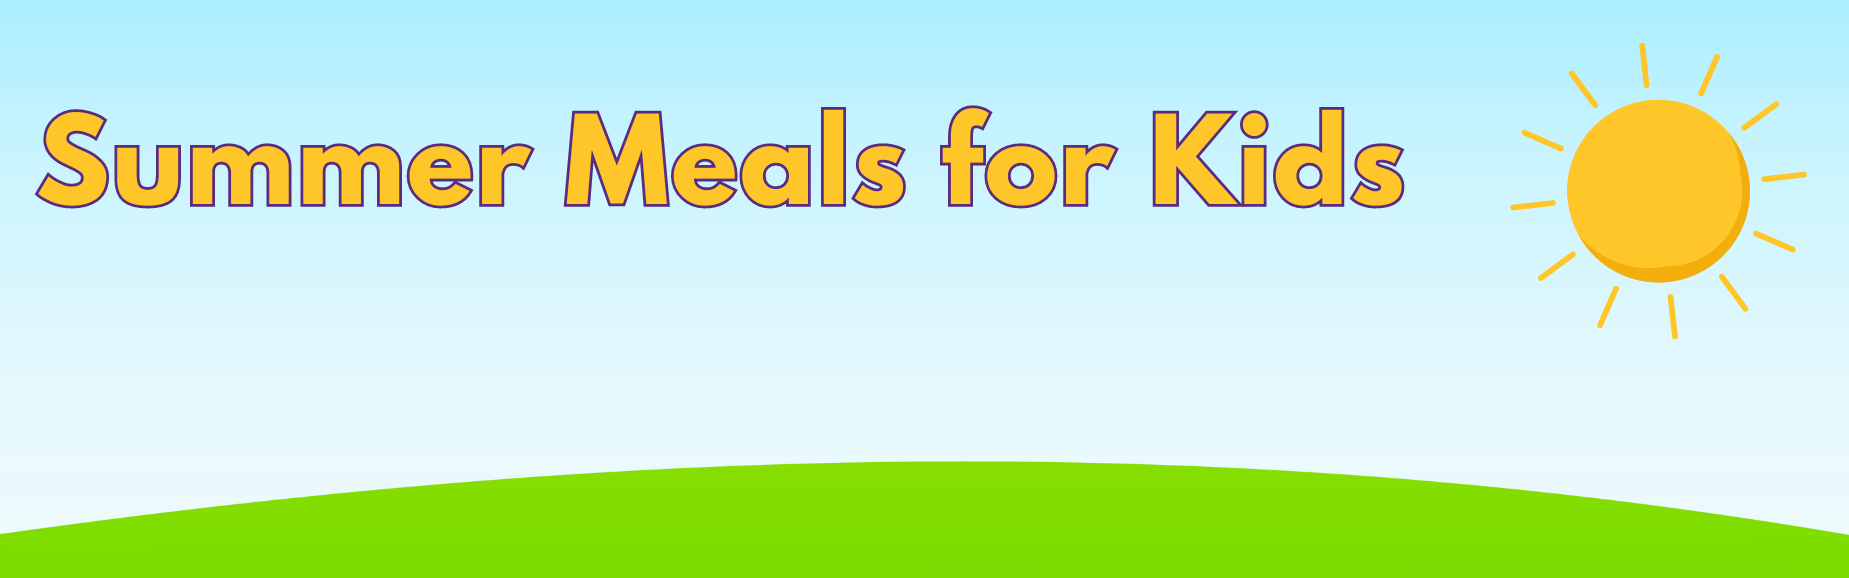 Summer Meals for Kids Image